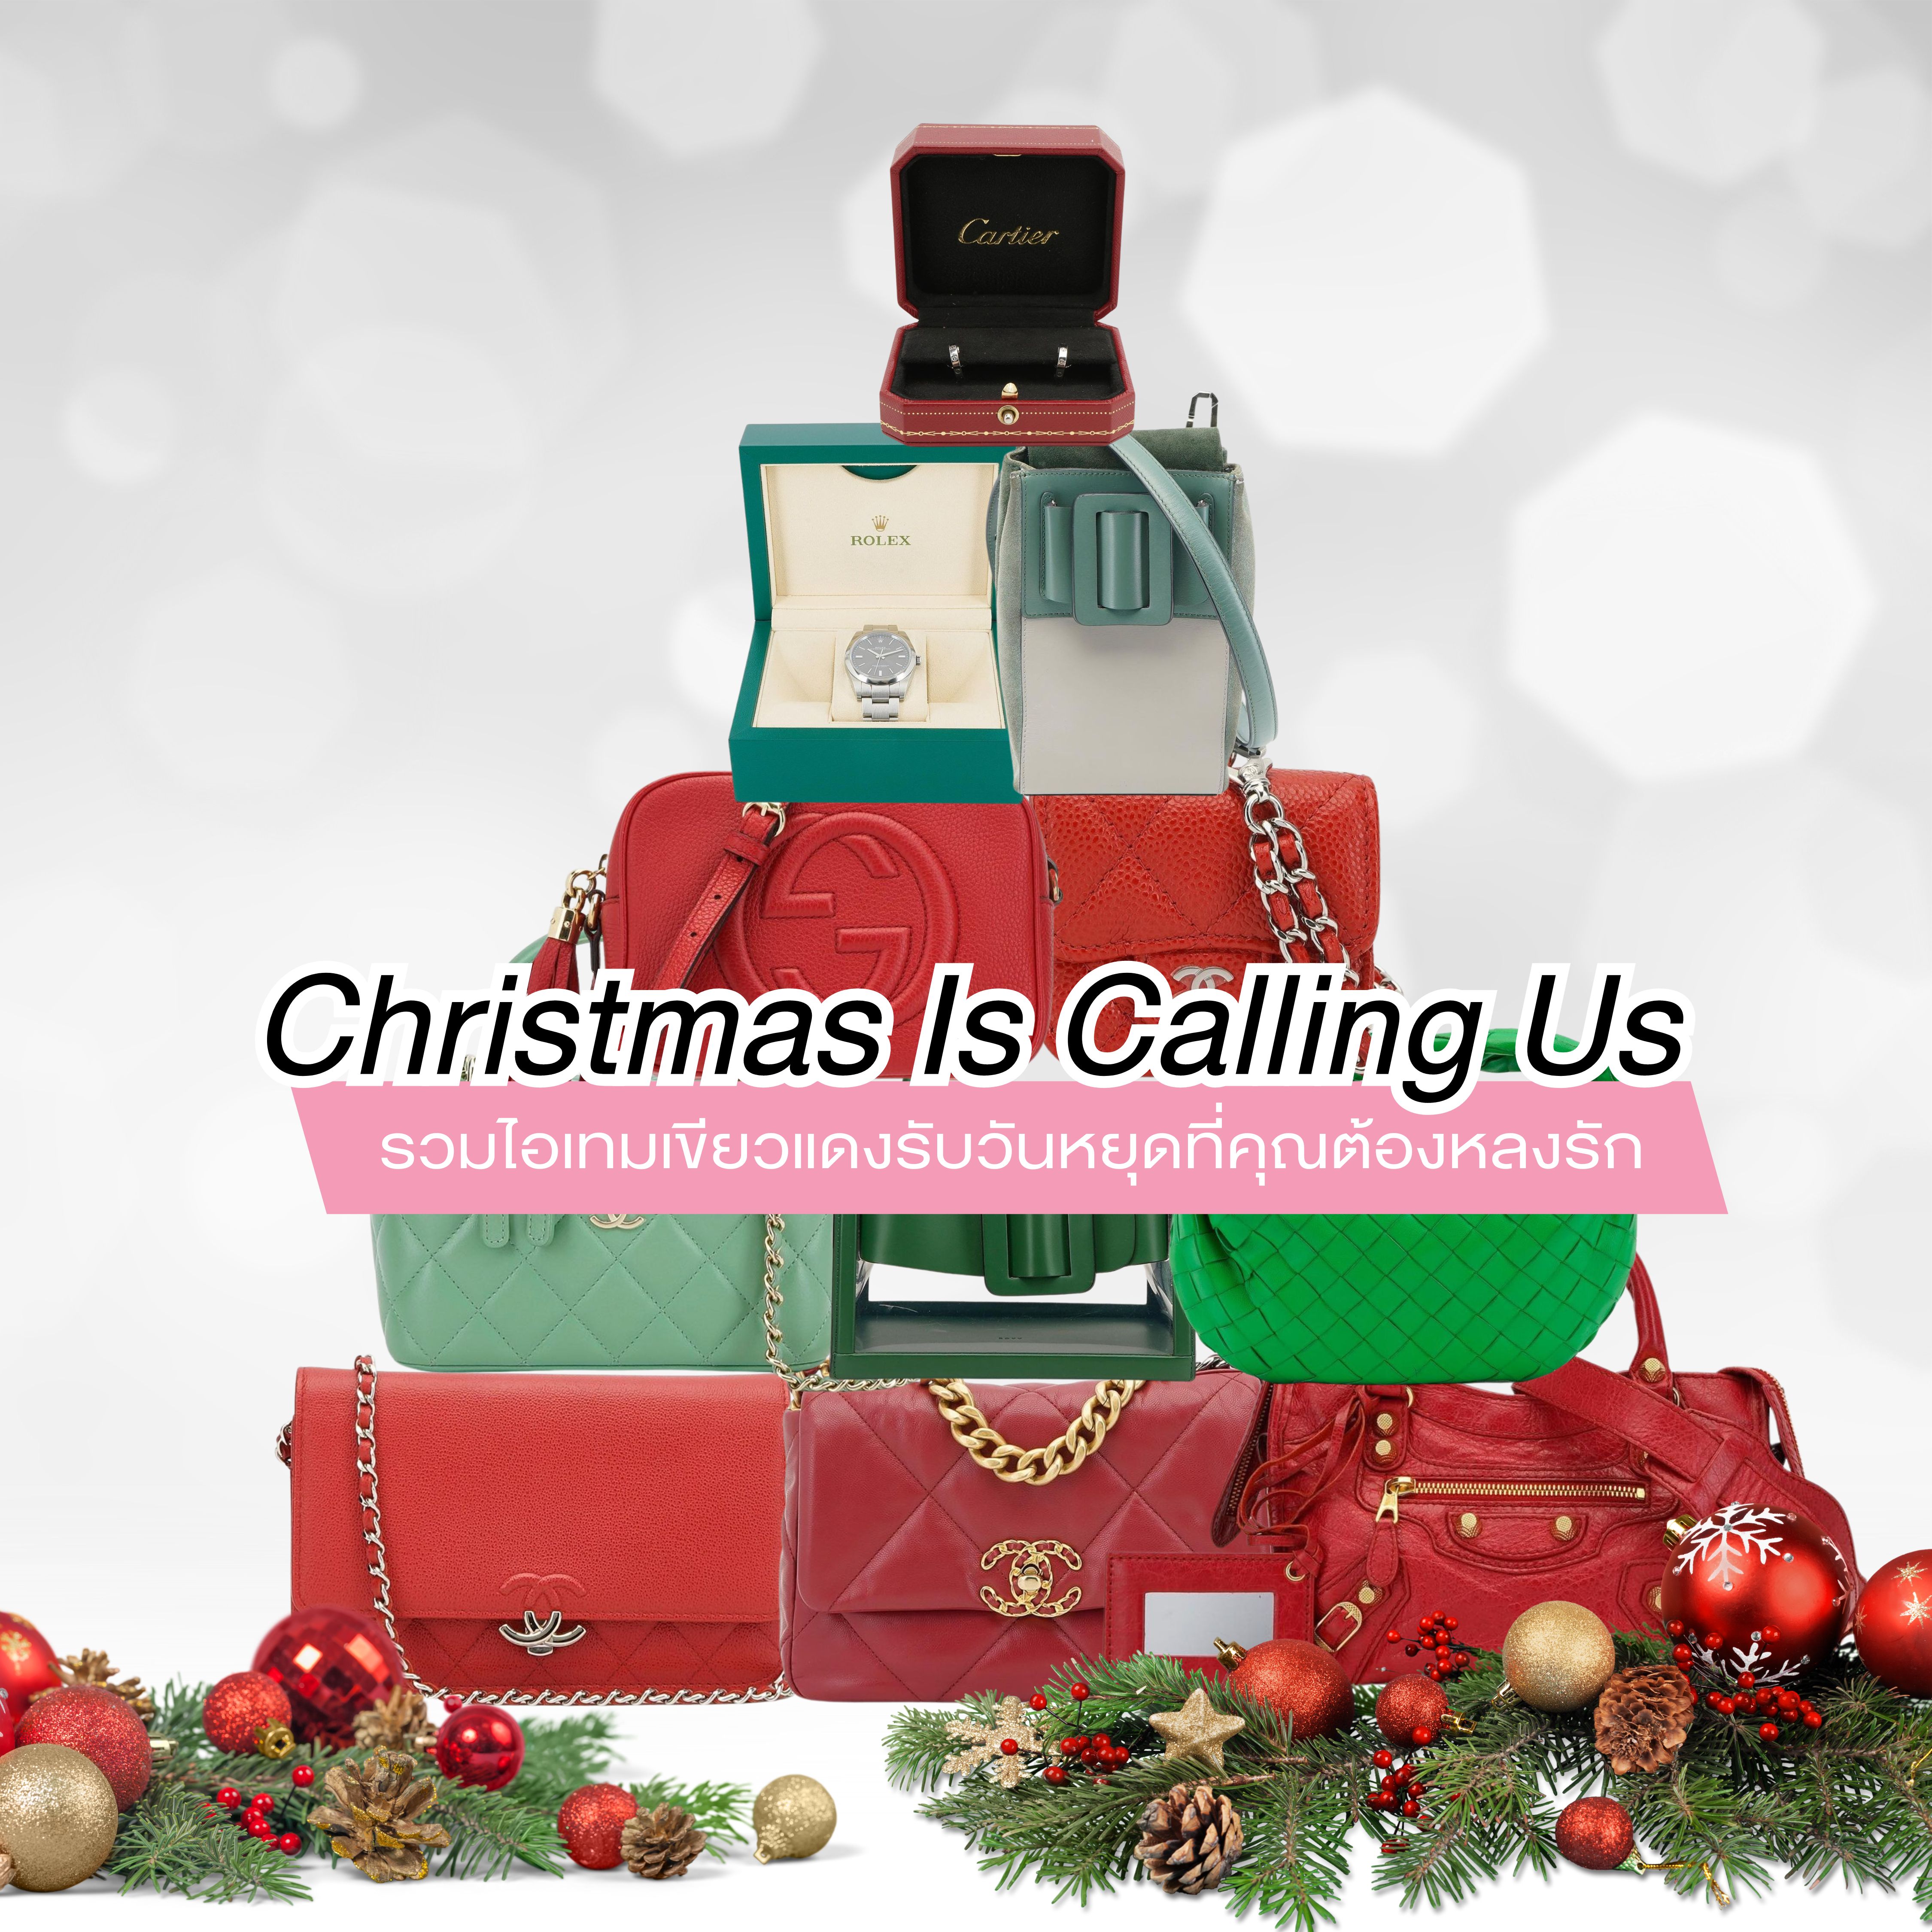 Christmas is Calling us : รวมไอเทมเขียวแดงรับวันหยุดที่คุณต้องหลงรัก